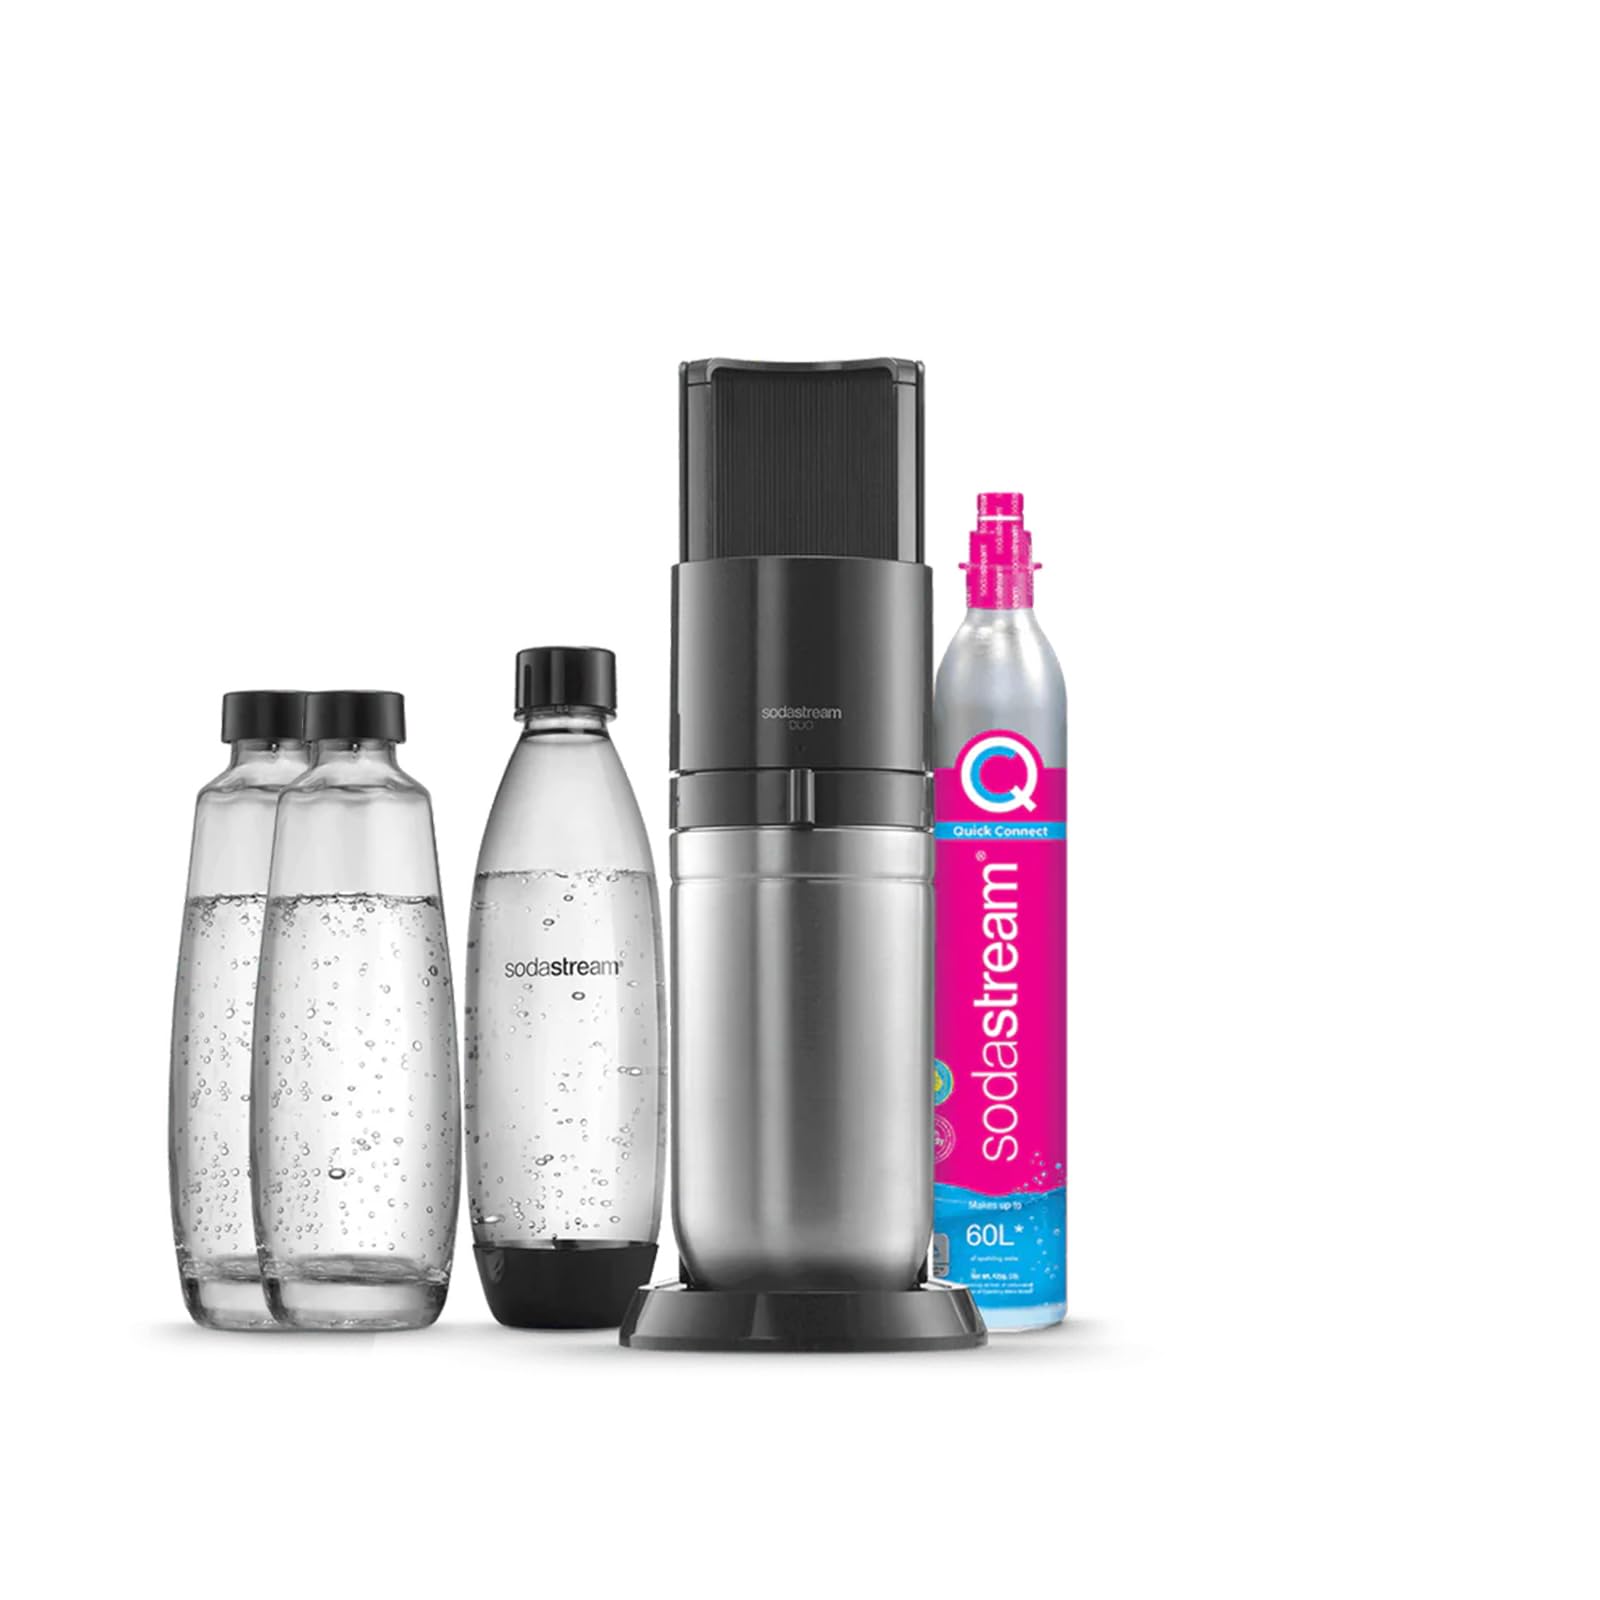 SodaStream Wassersprudler DUO Vorteilspack mit 1x Quick-Connect CO2-Zylinder, 2x 1L Glasflasche und 1x 1L spülmaschinenfeste Kunststoff-Flasche, Höhe: 44cm, Farbe: Titan